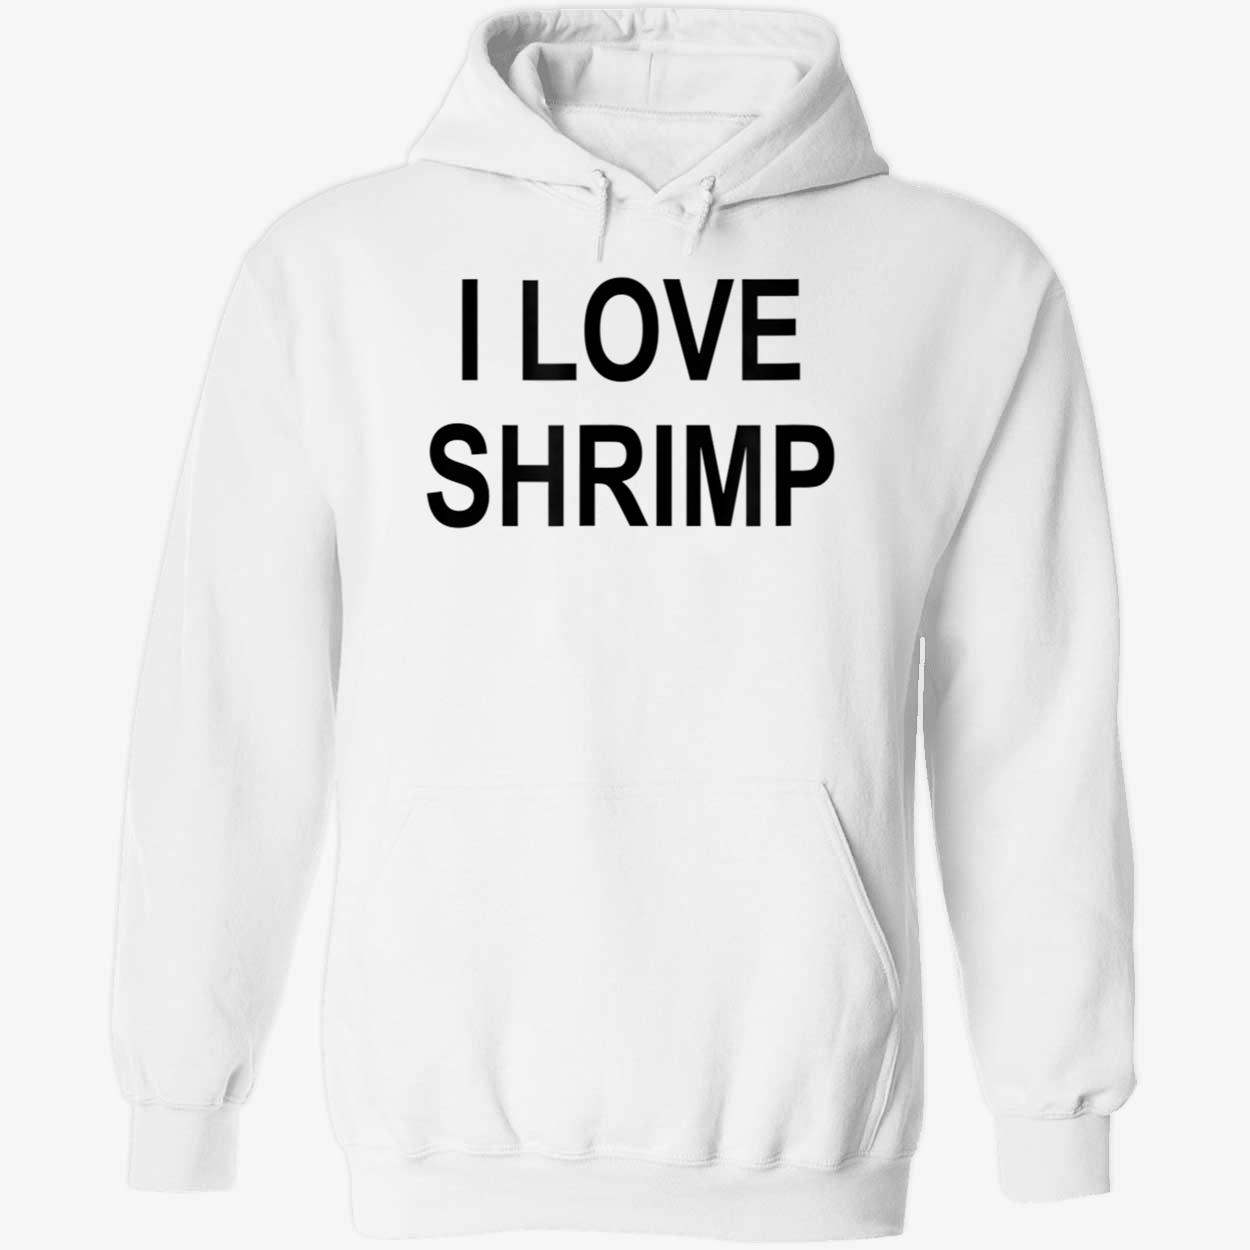 I Love Shrimp Shirt